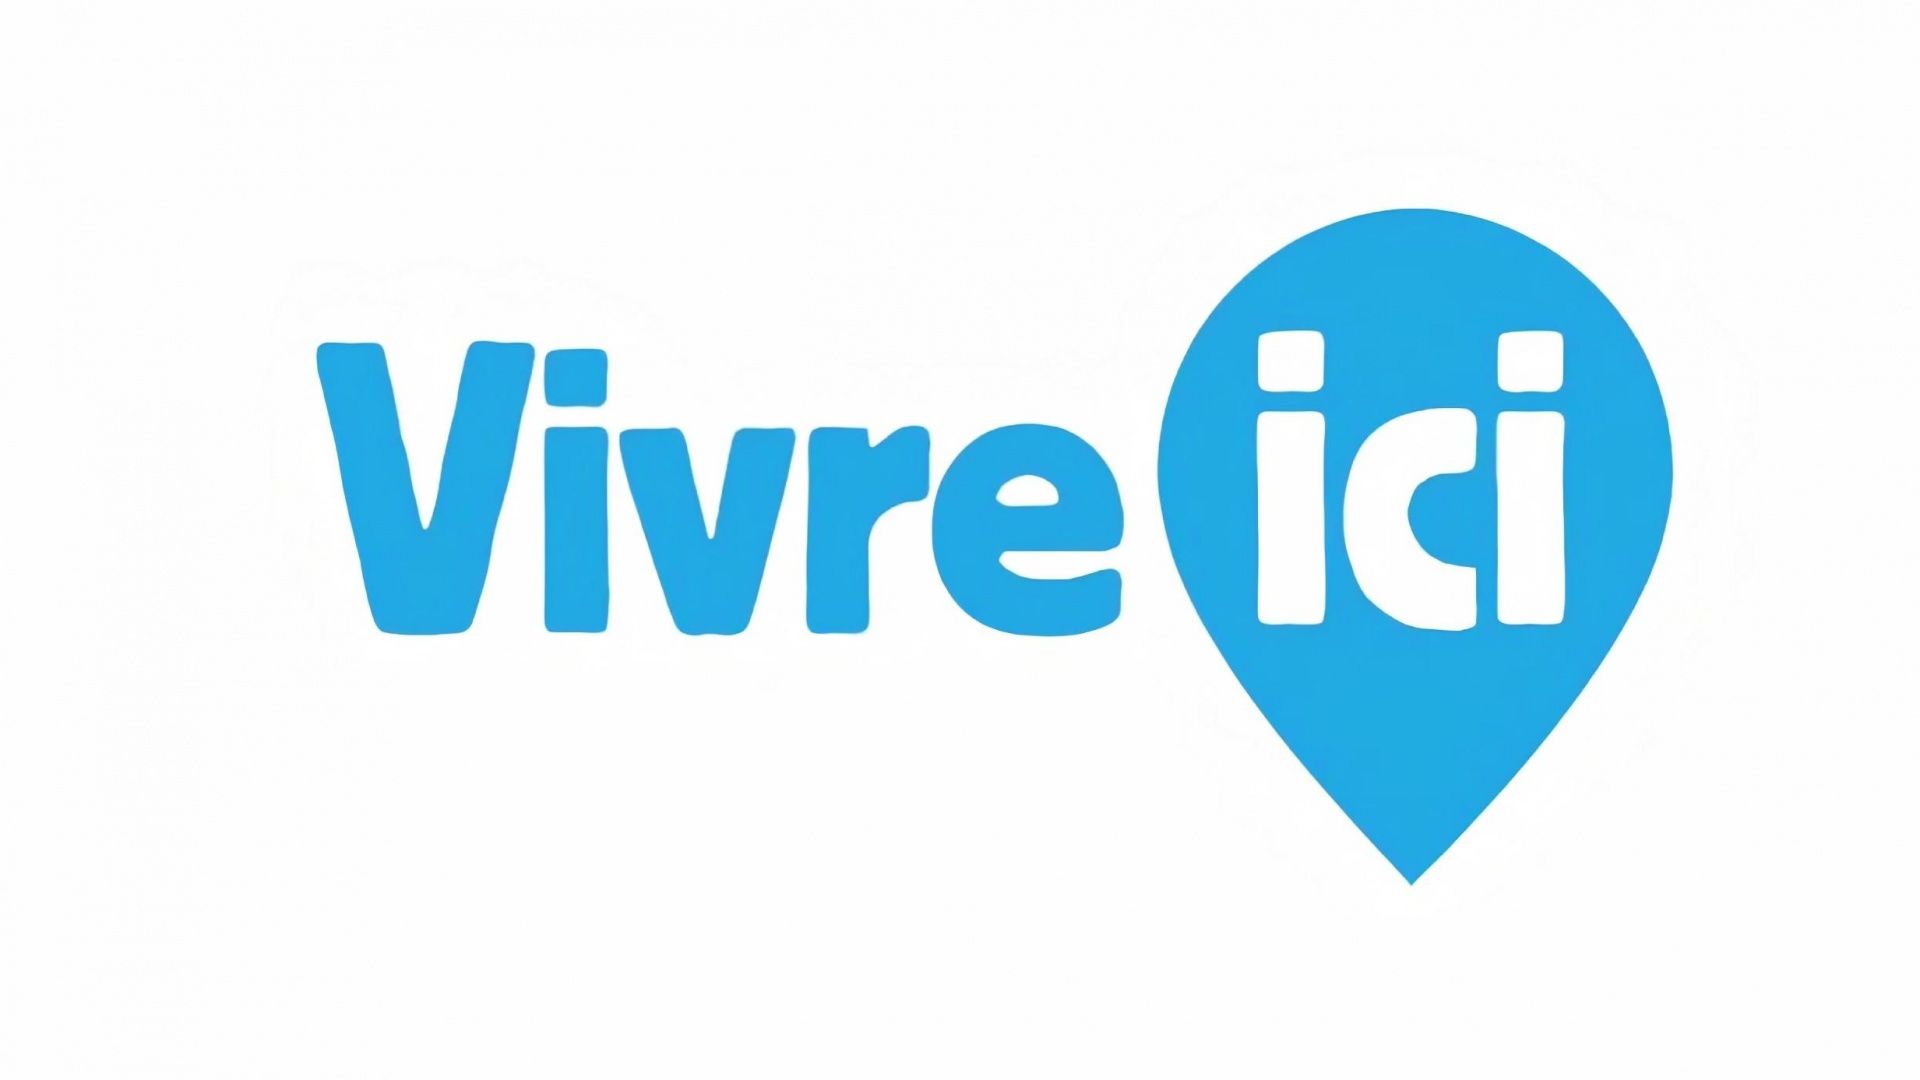 www.vivreici.be